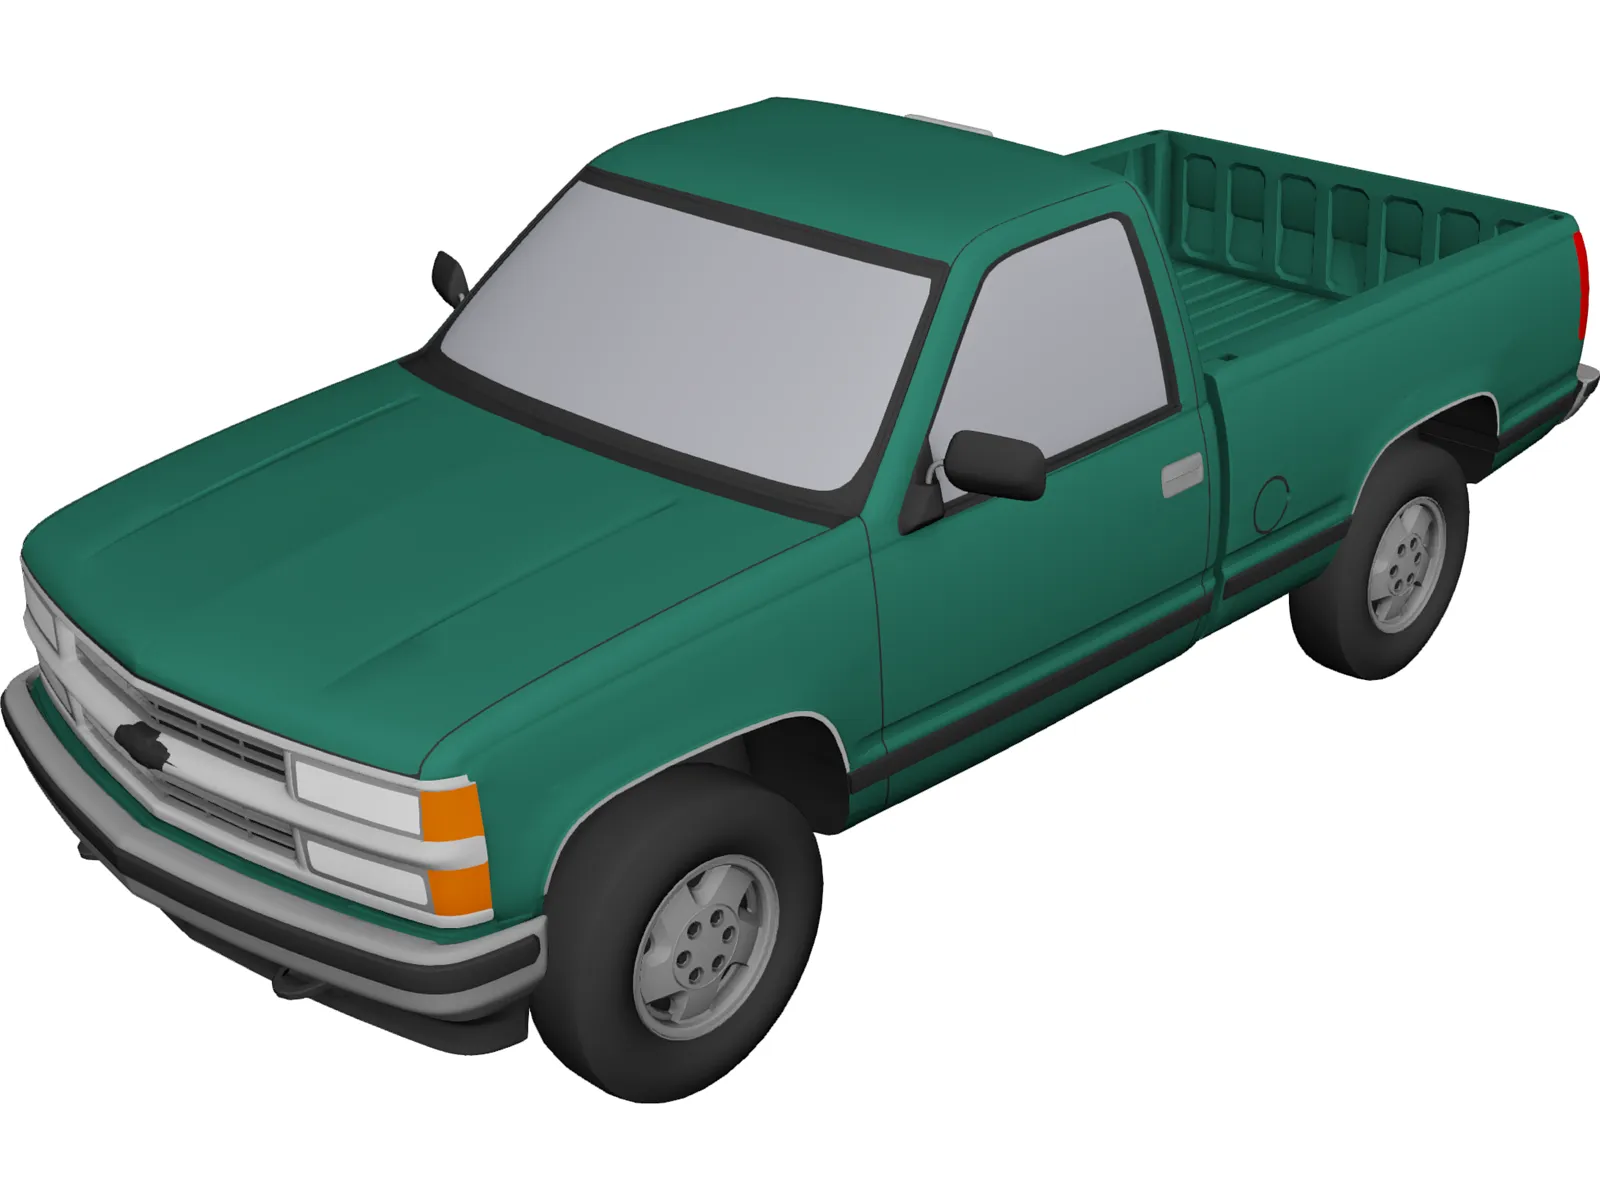 Chevrolet Full-Size Pickup (1994) 3D Model